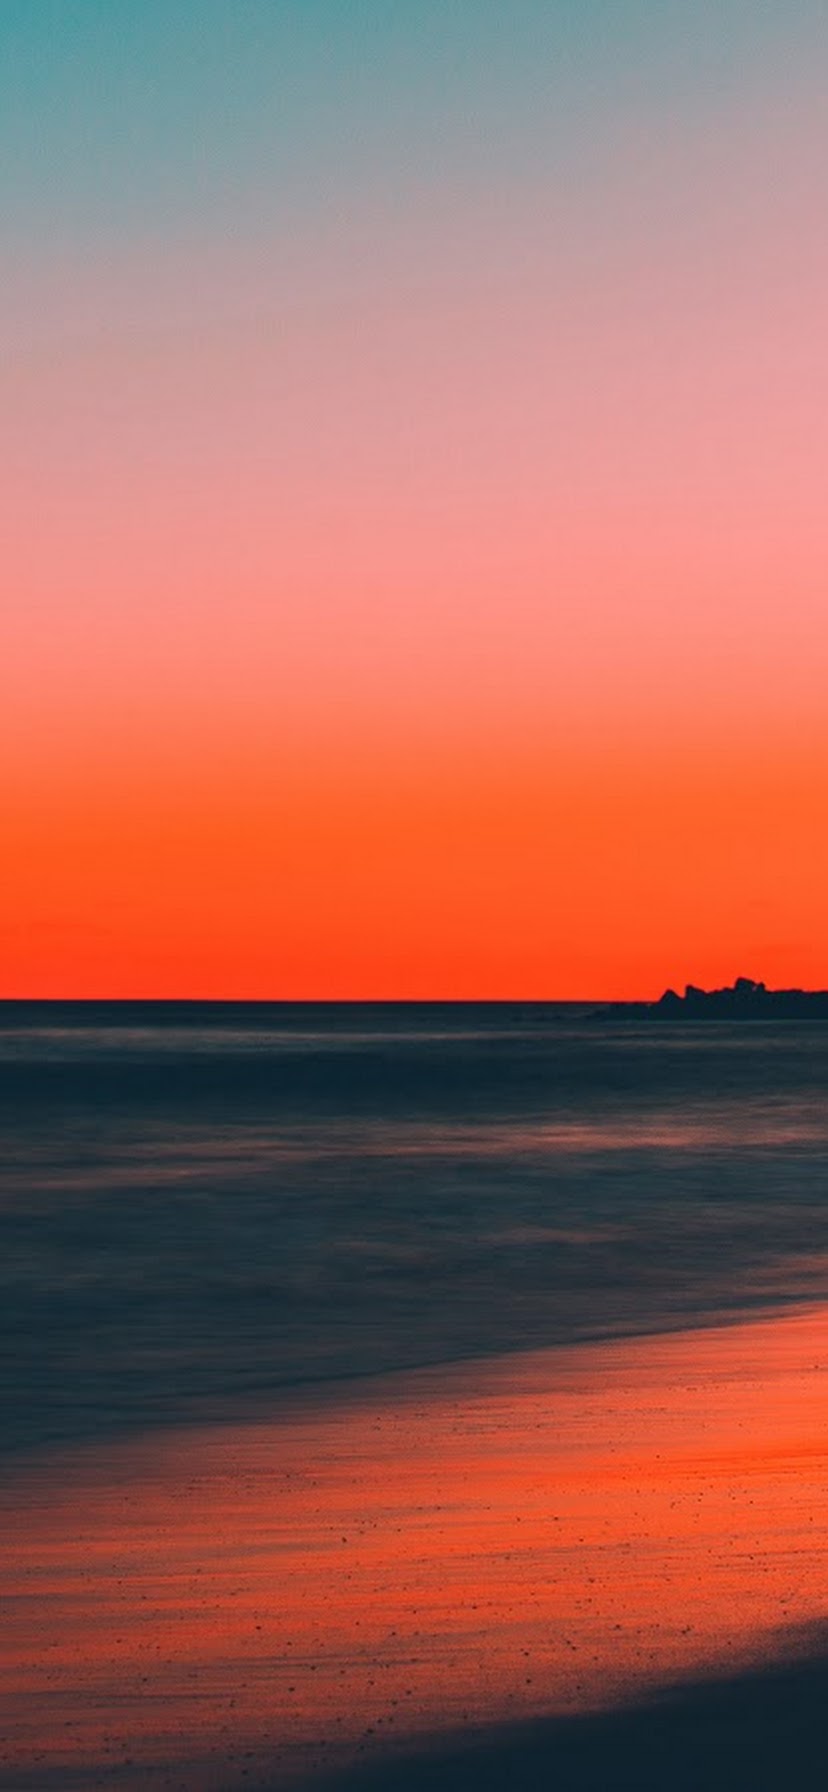 Sunset Beach Sea Horizon Scenery 8k Wallpaper 165